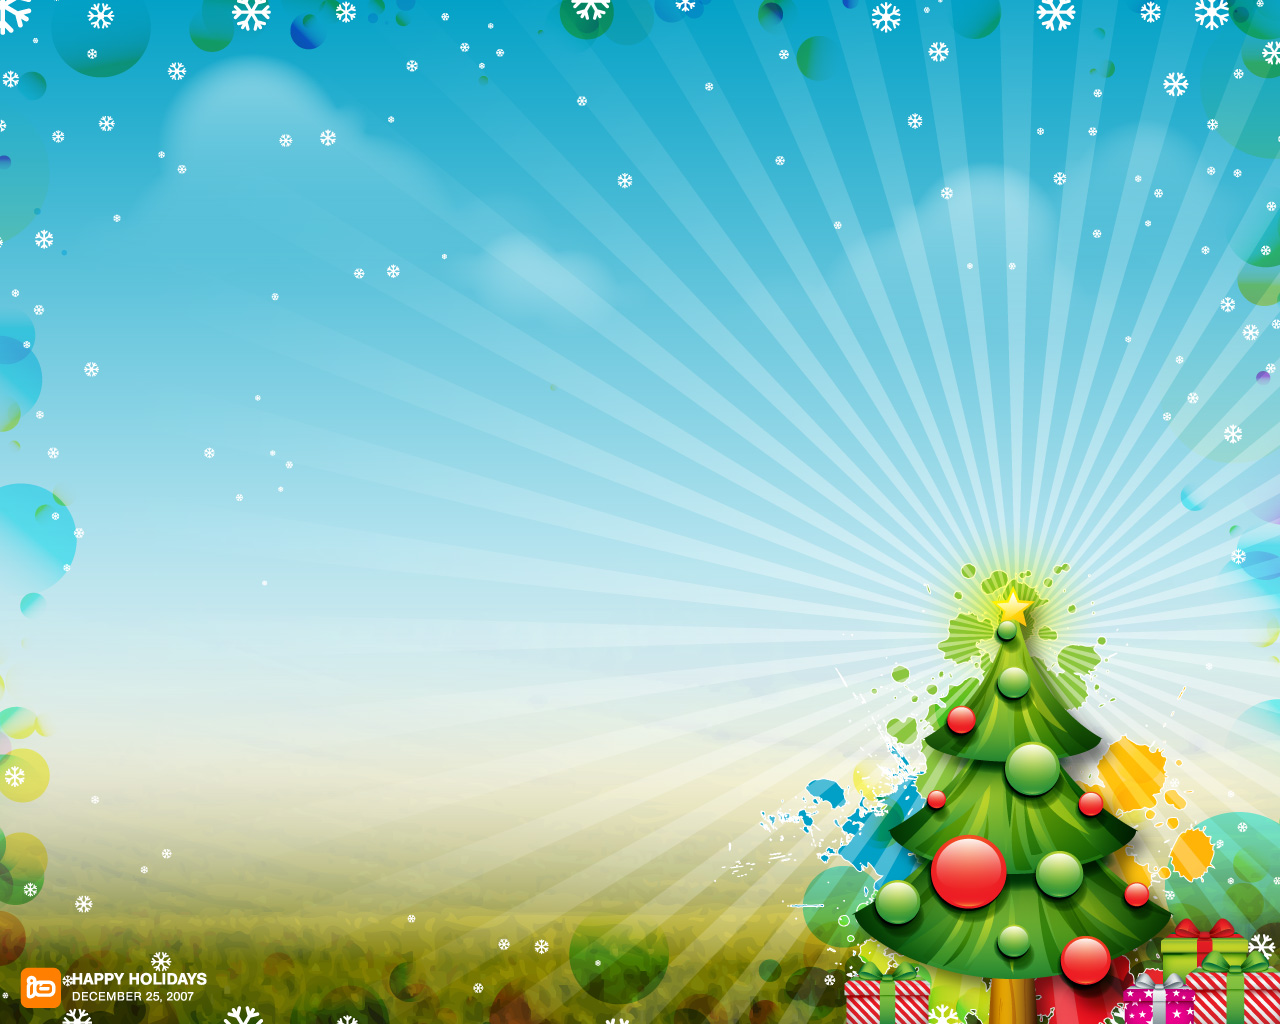 Bạn đang tìm kiếm hình nền Giáng sinh HD đẹp để trang trí cho máy tính của mình? Hãy đến với WallpaperSafari và khám phá ngay những bức ảnh tuyệt đẹp với chủ đề Giáng sinh đầy màu sắc và sống động. Hình ảnh chi tiết và rực rỡ màu sắc sẽ giúp cho màn hình của bạn trở nên vô cùng thu hút và ấn tượng.